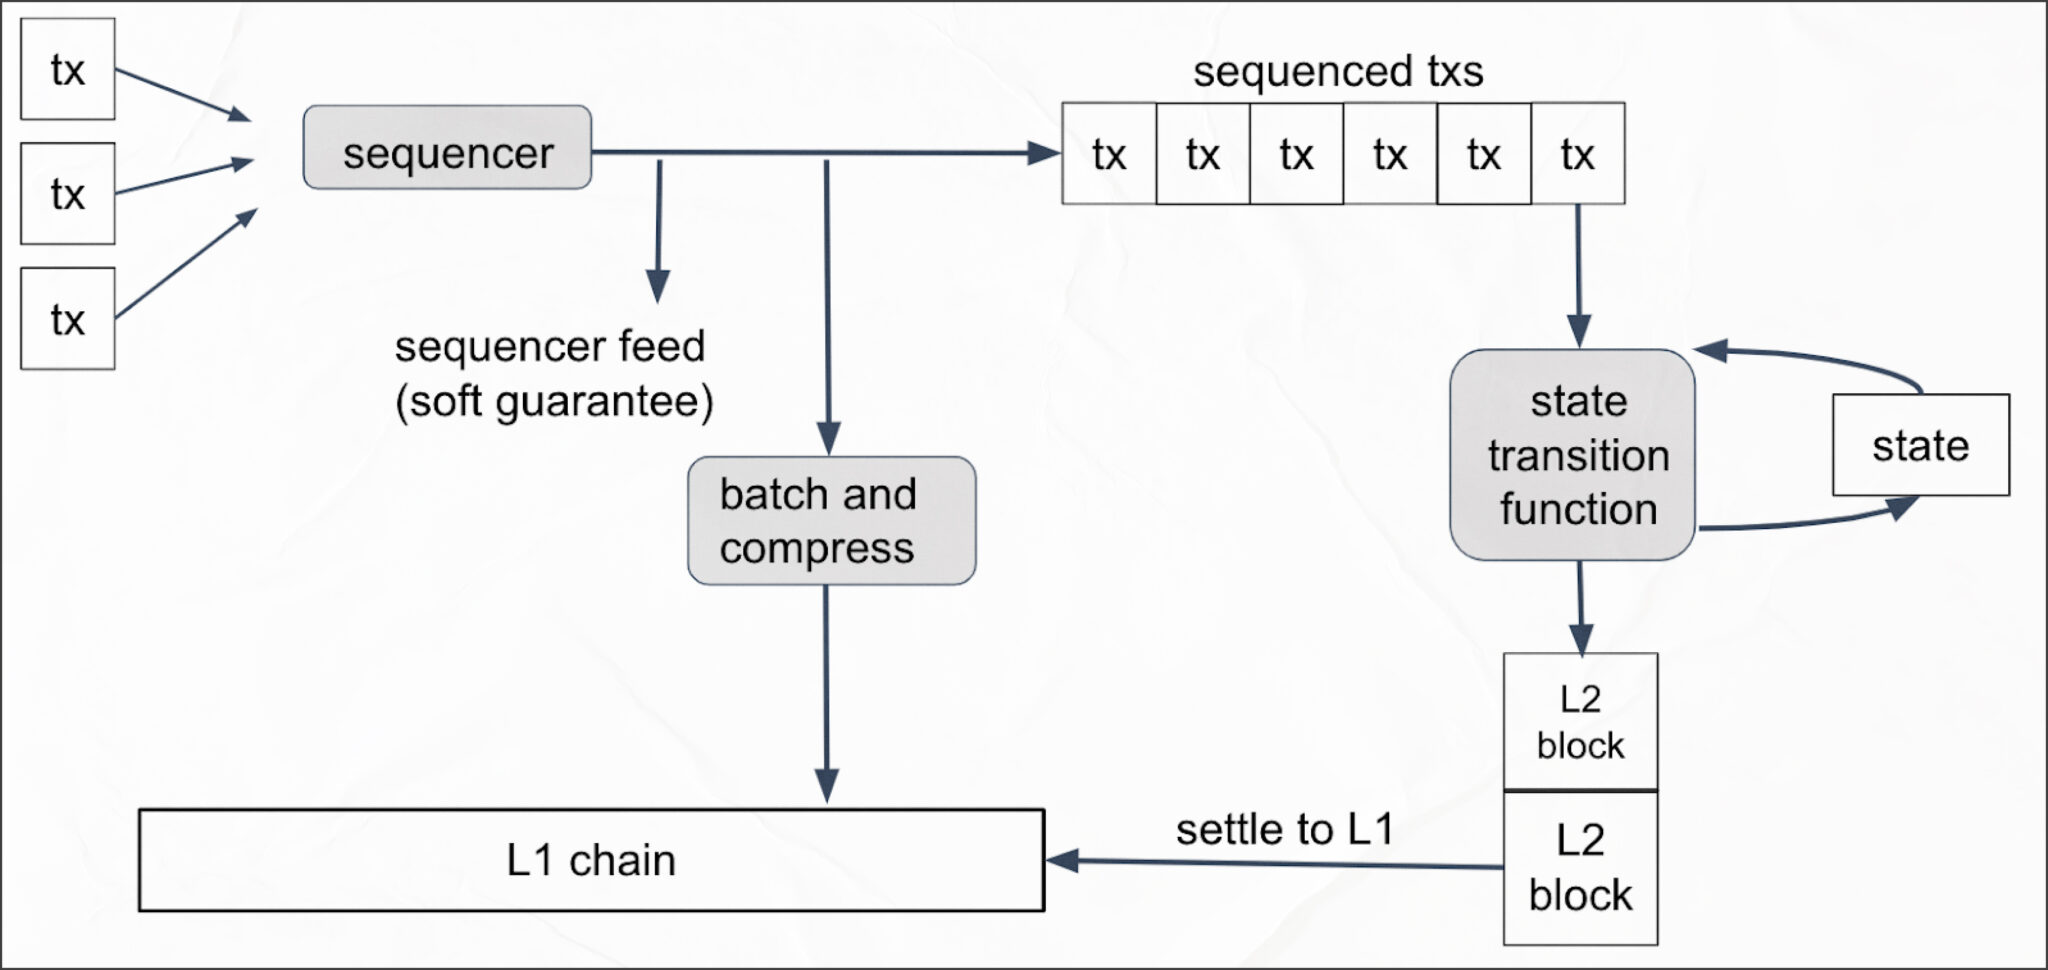 Transaction Processing Algorithm in Arbitrum